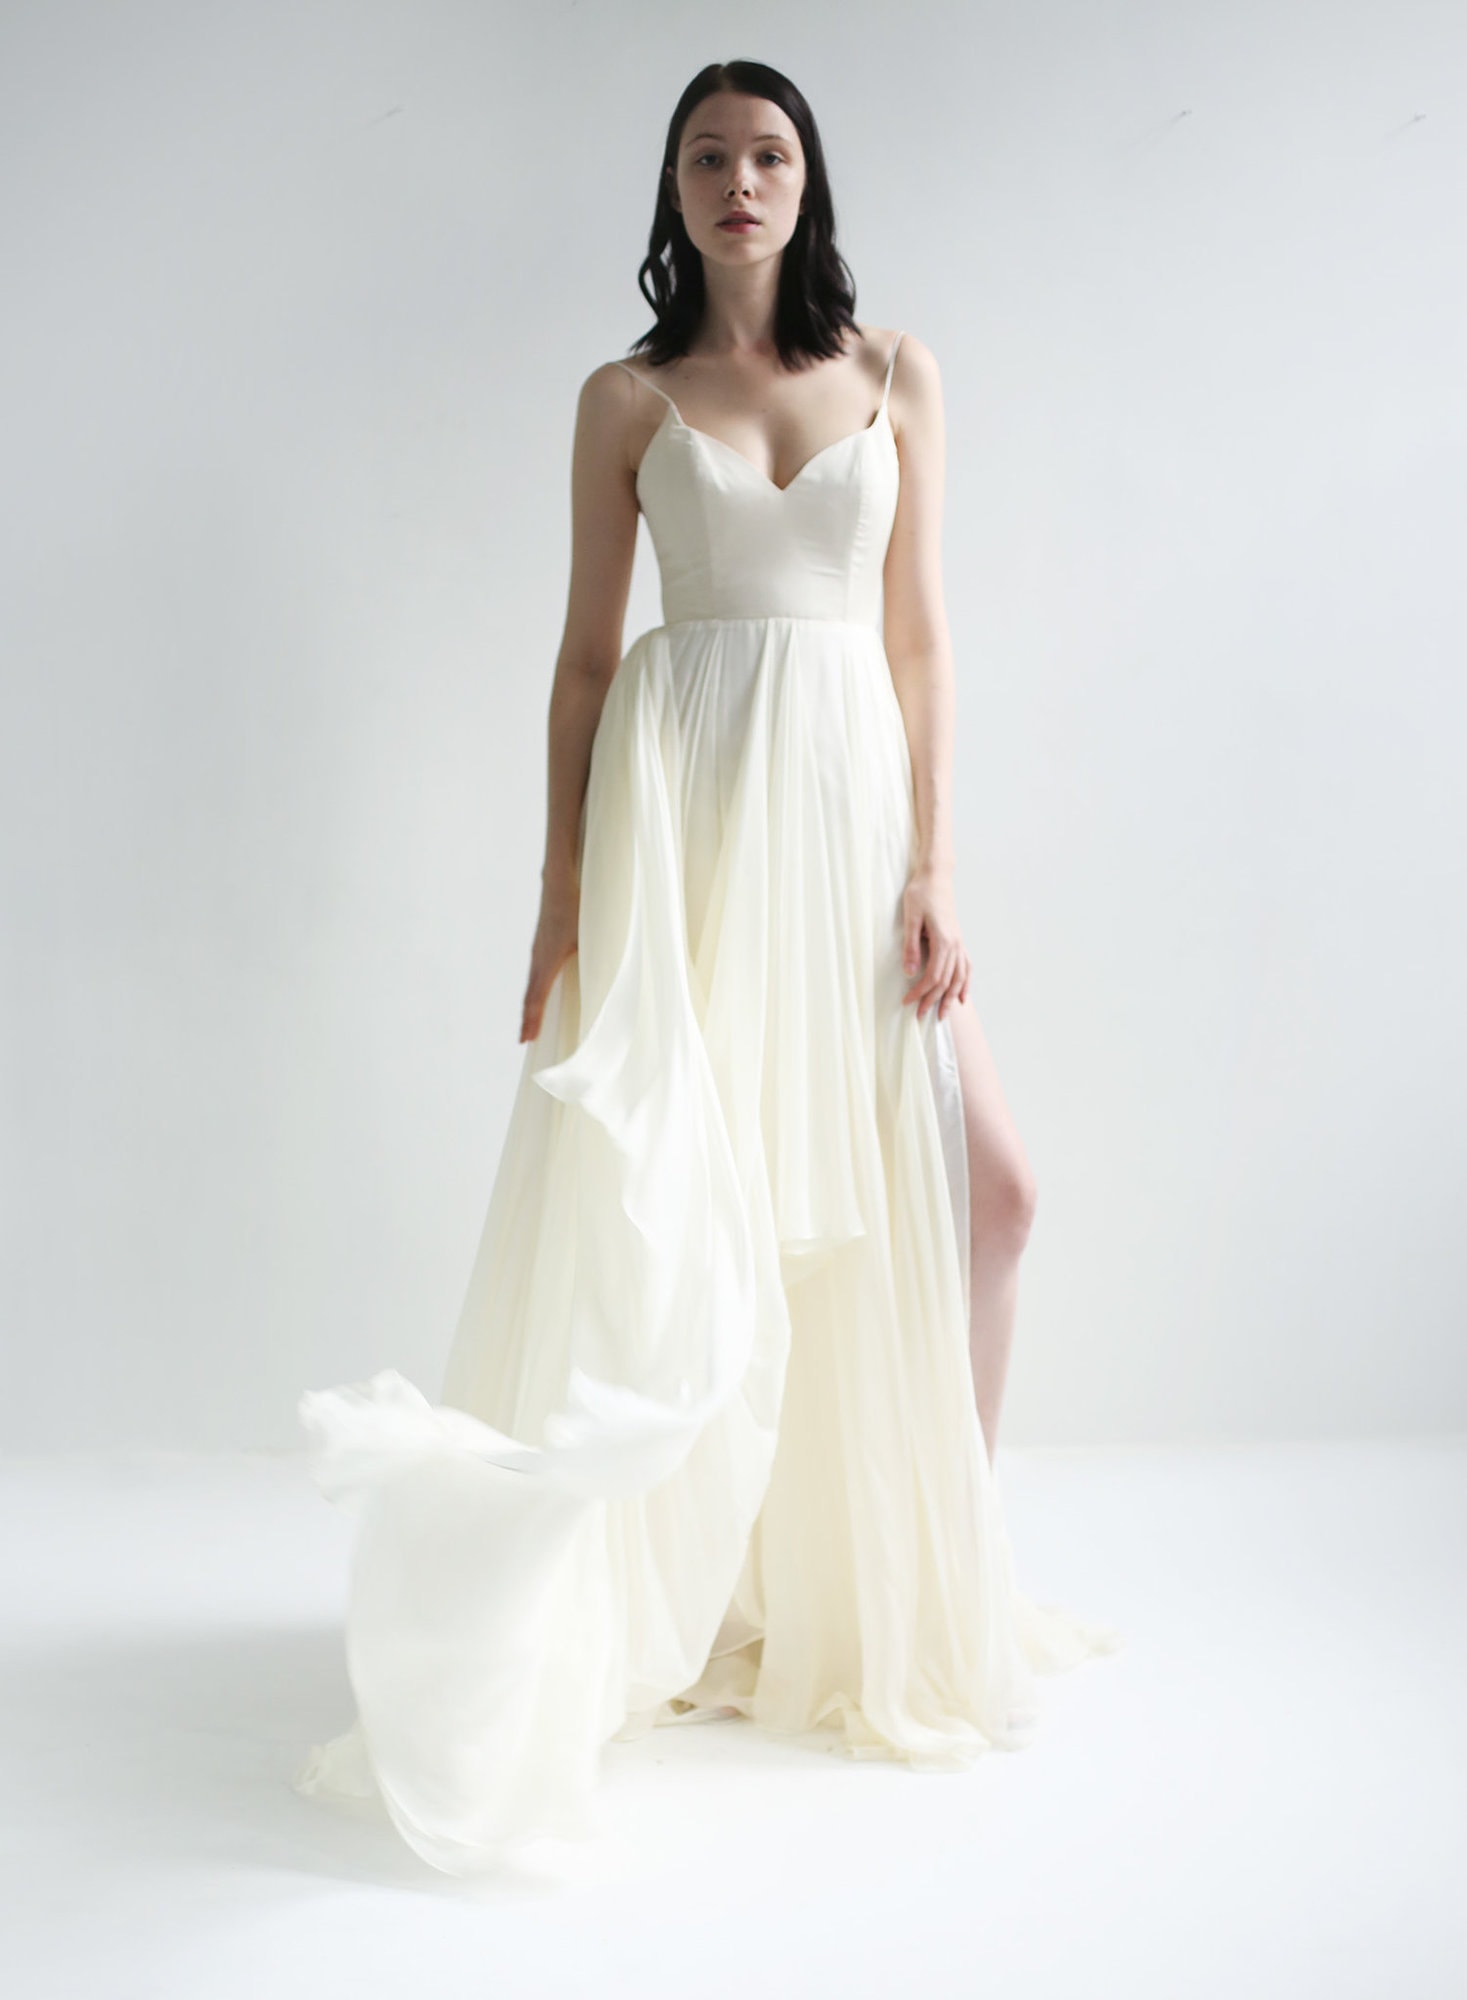 The Best Elopement Wedding Dresses | Aimee Flynn Photo